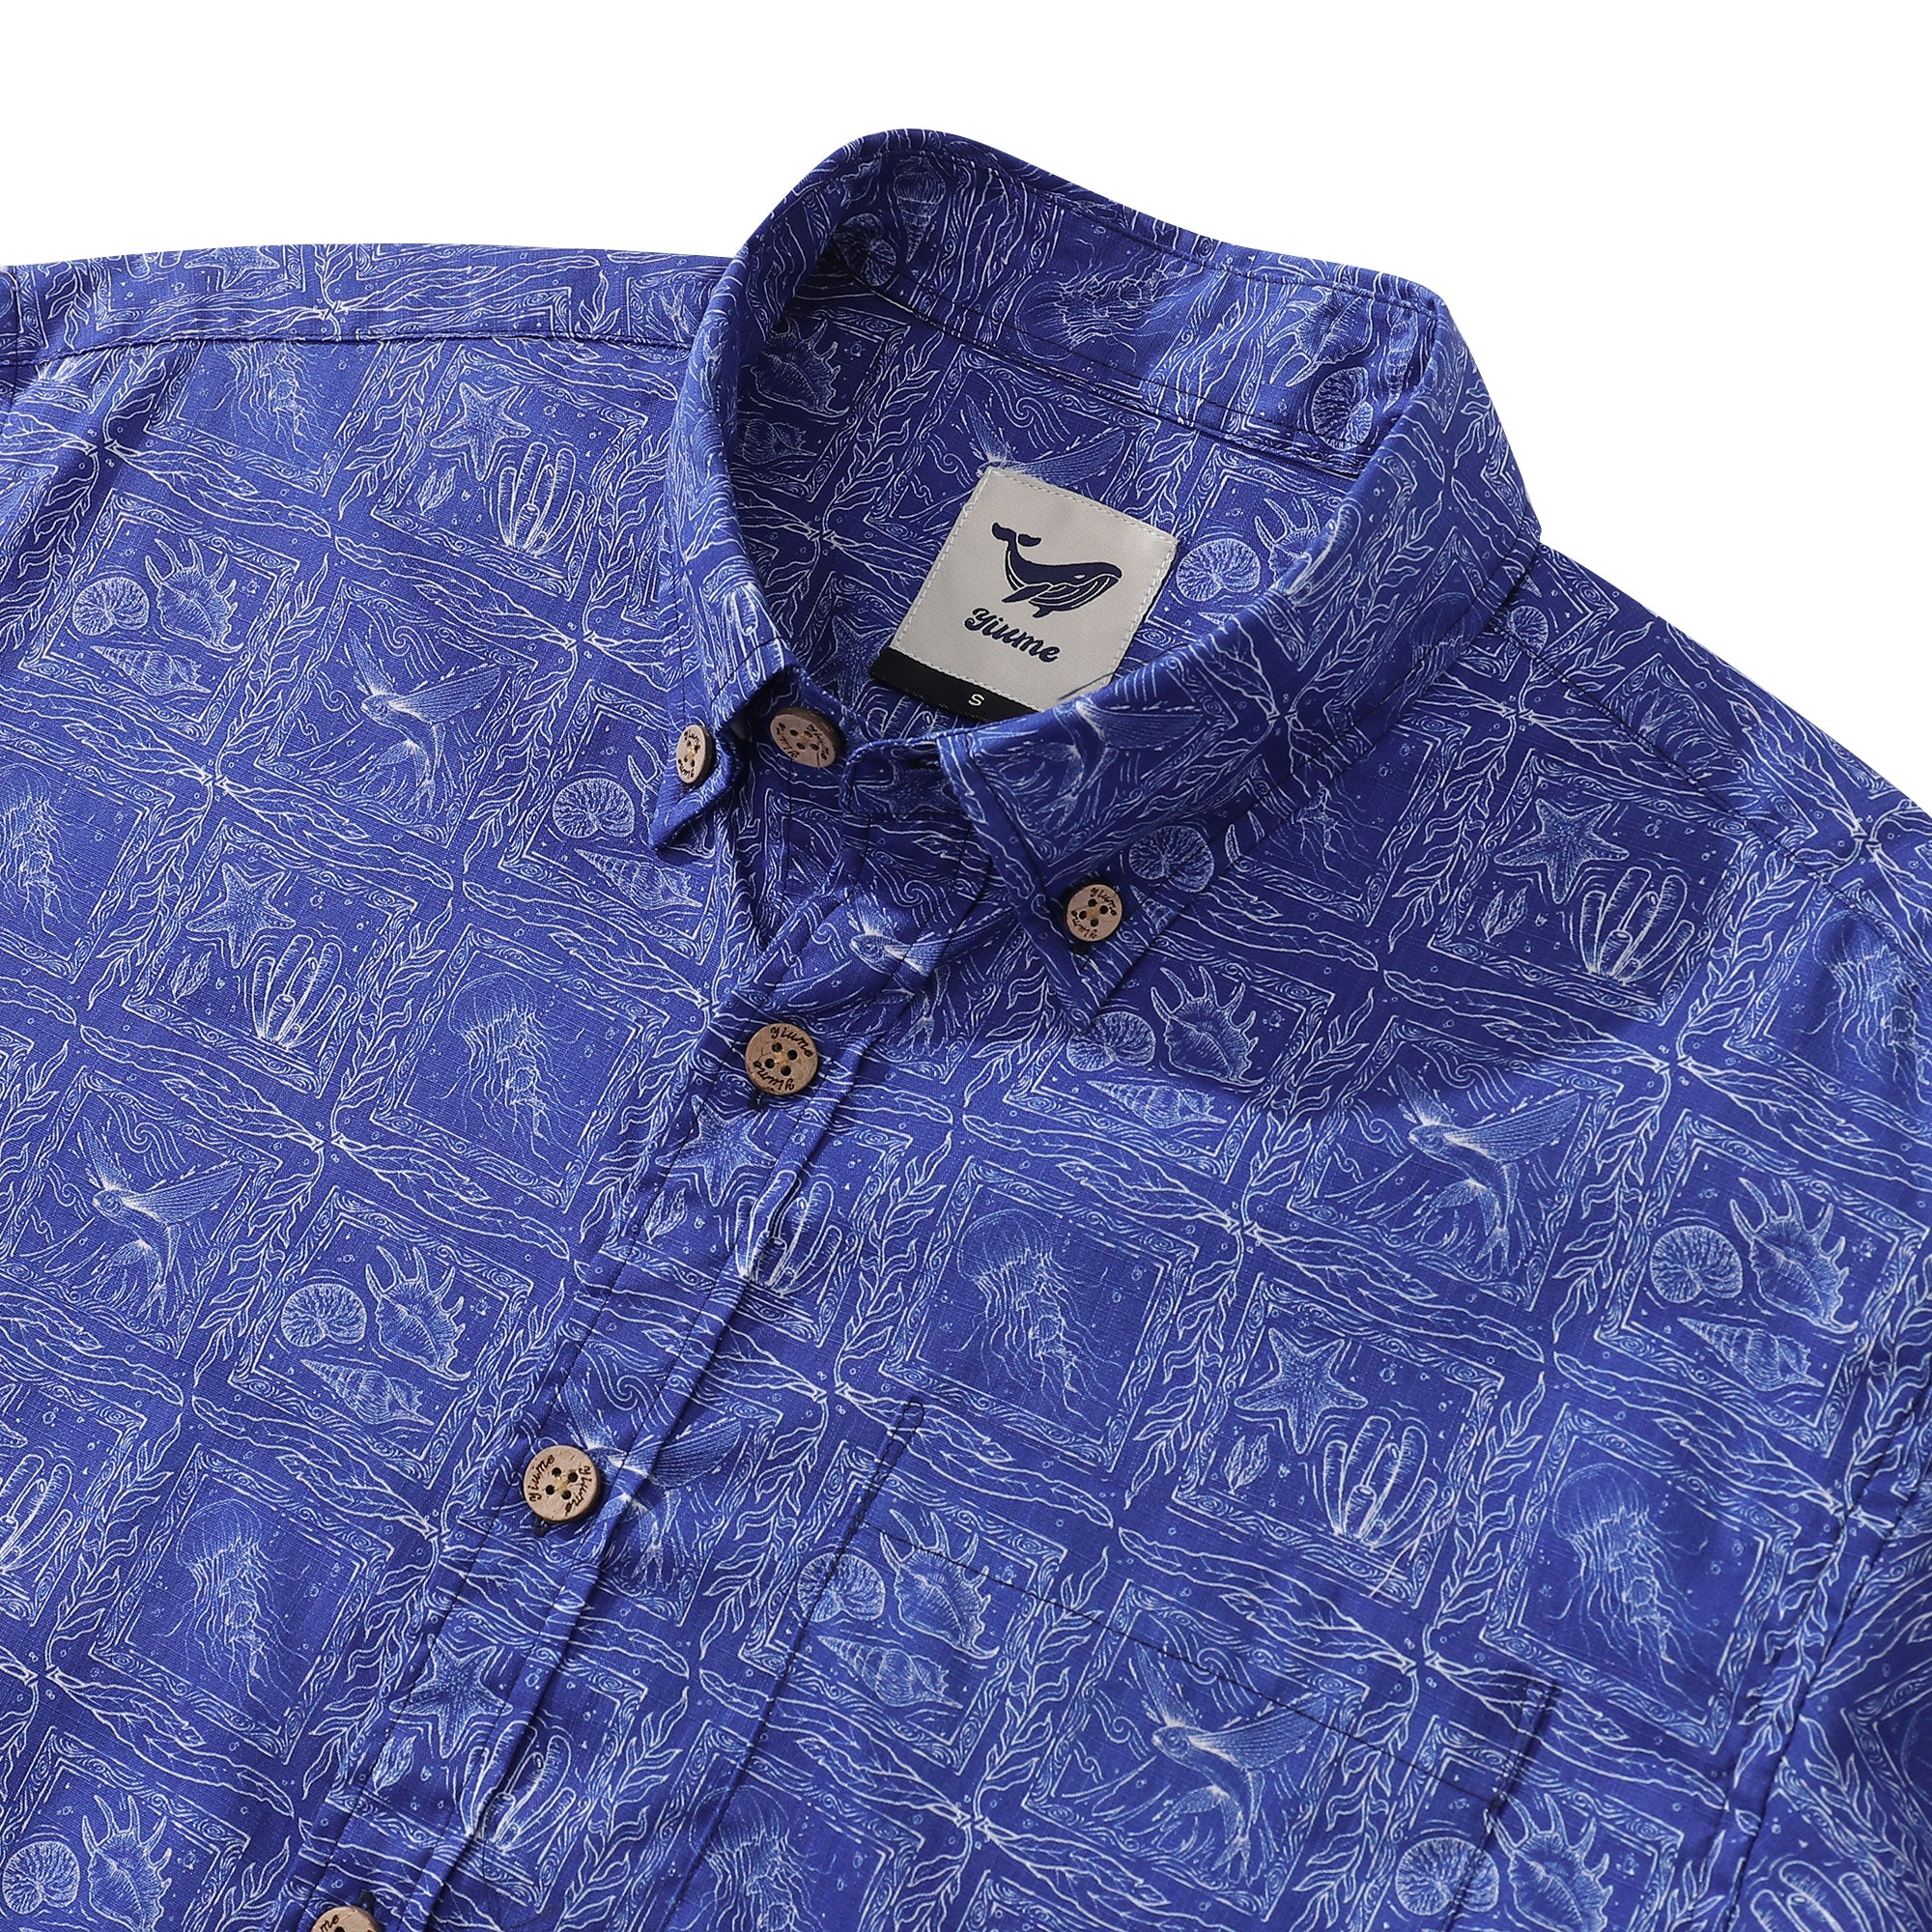 Yiume Bluey Hawaiian Shirt For Men Ocean Life Shirt Short Sleeve Hawaiian Shirt